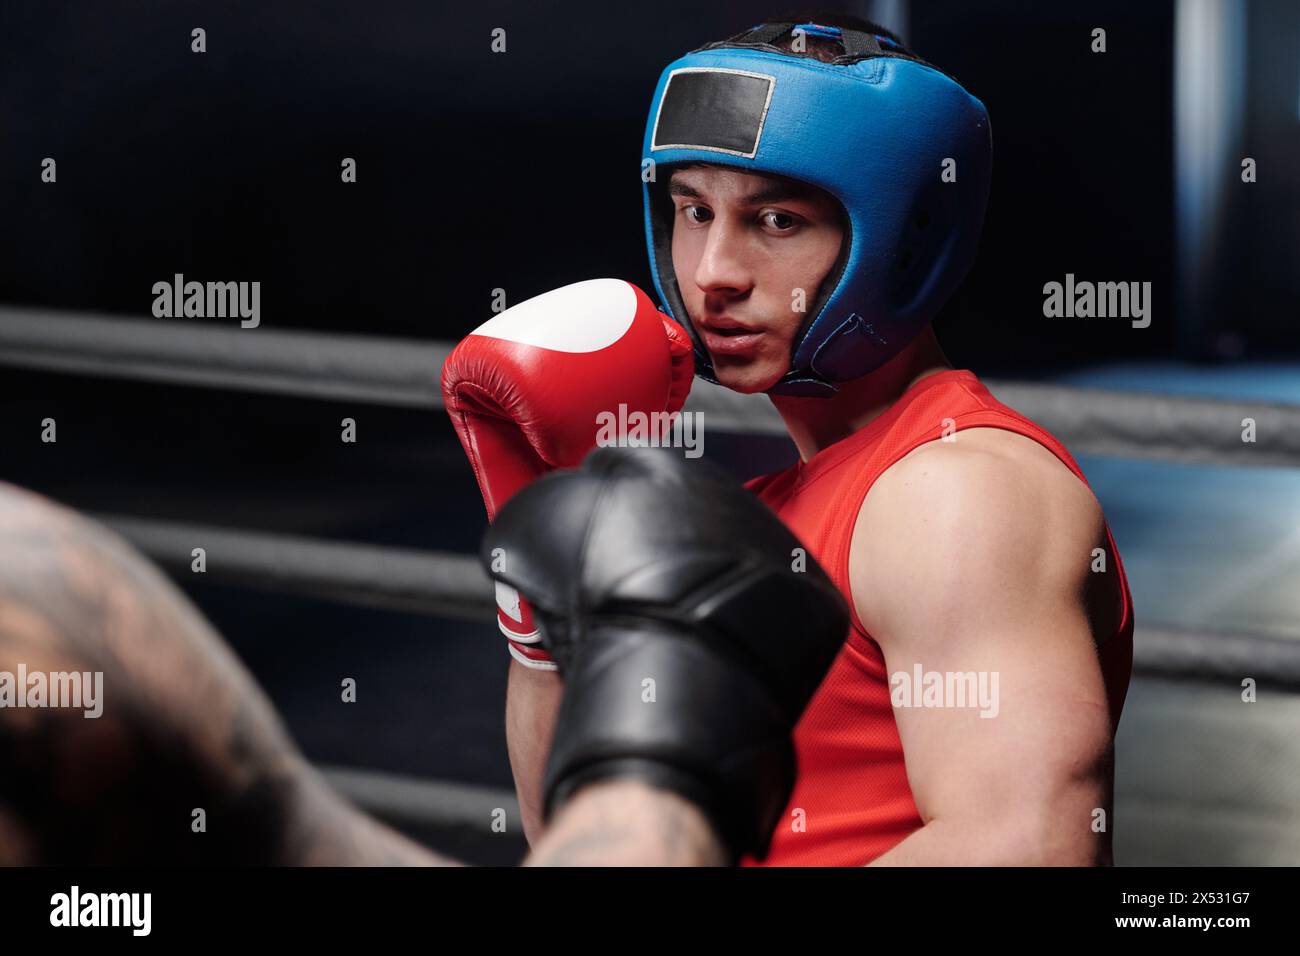 Junger muskulöser Mann in roter Weste und Boxhandschuhen und blauem Gesichtsschild, der seinen Rivalen ansieht, bevor er während des Kampfes auf dem Ring tritt Stockfoto